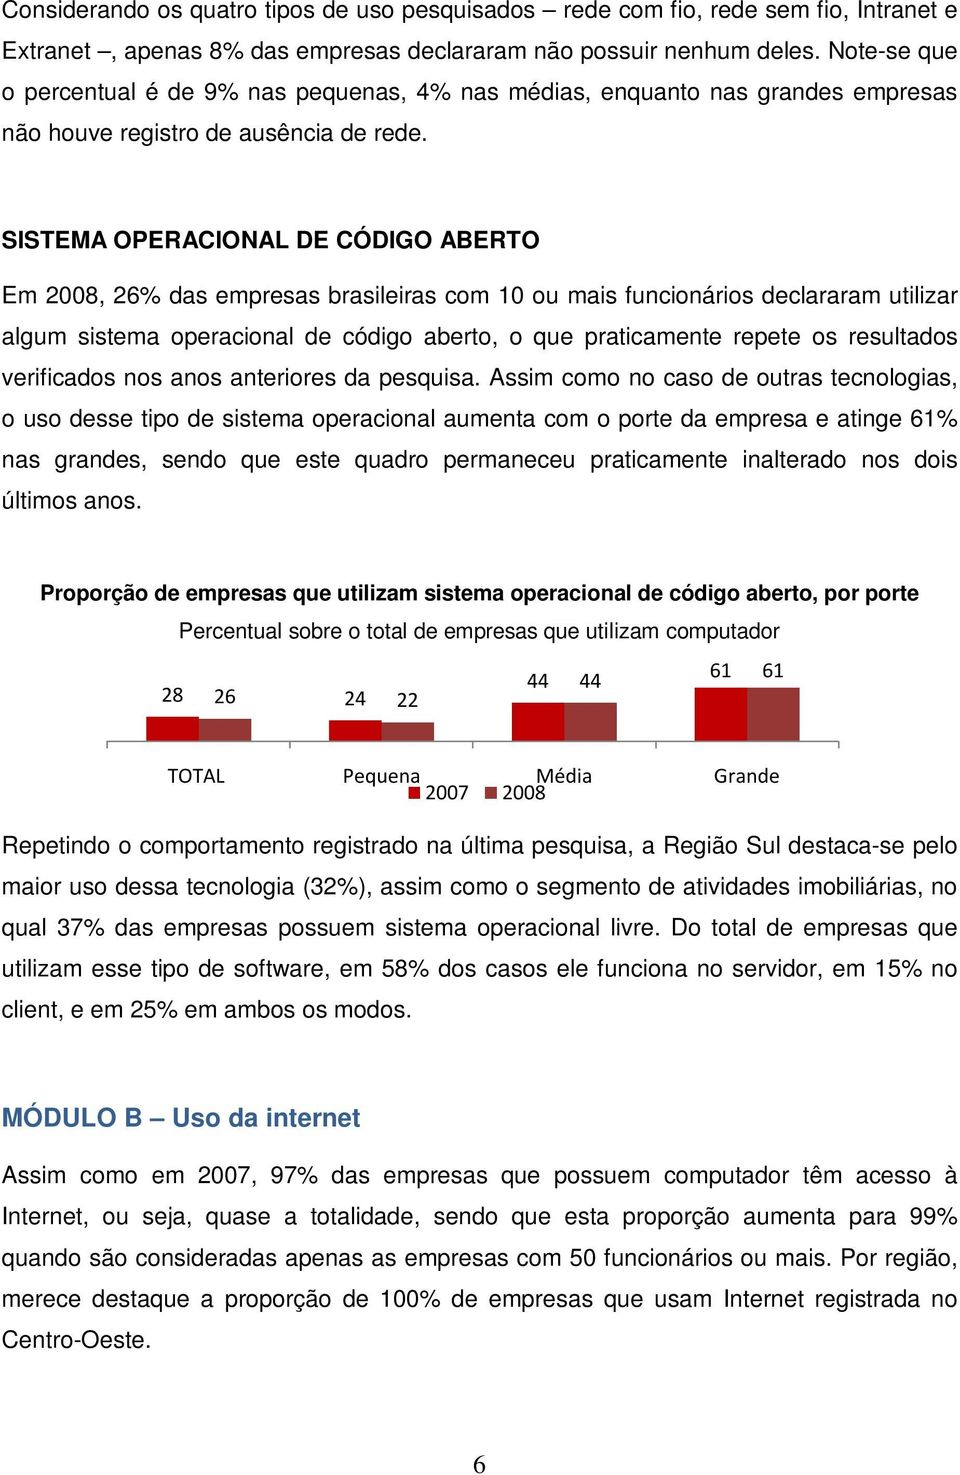 SISTEMA OPERACIONAL DE CÓDIGO ABERTO Em 2008, 26% das empresas brasileiras com 10 ou mais funcionários declararam utilizar algum sistema operacional de código aberto, o que praticamente repete os